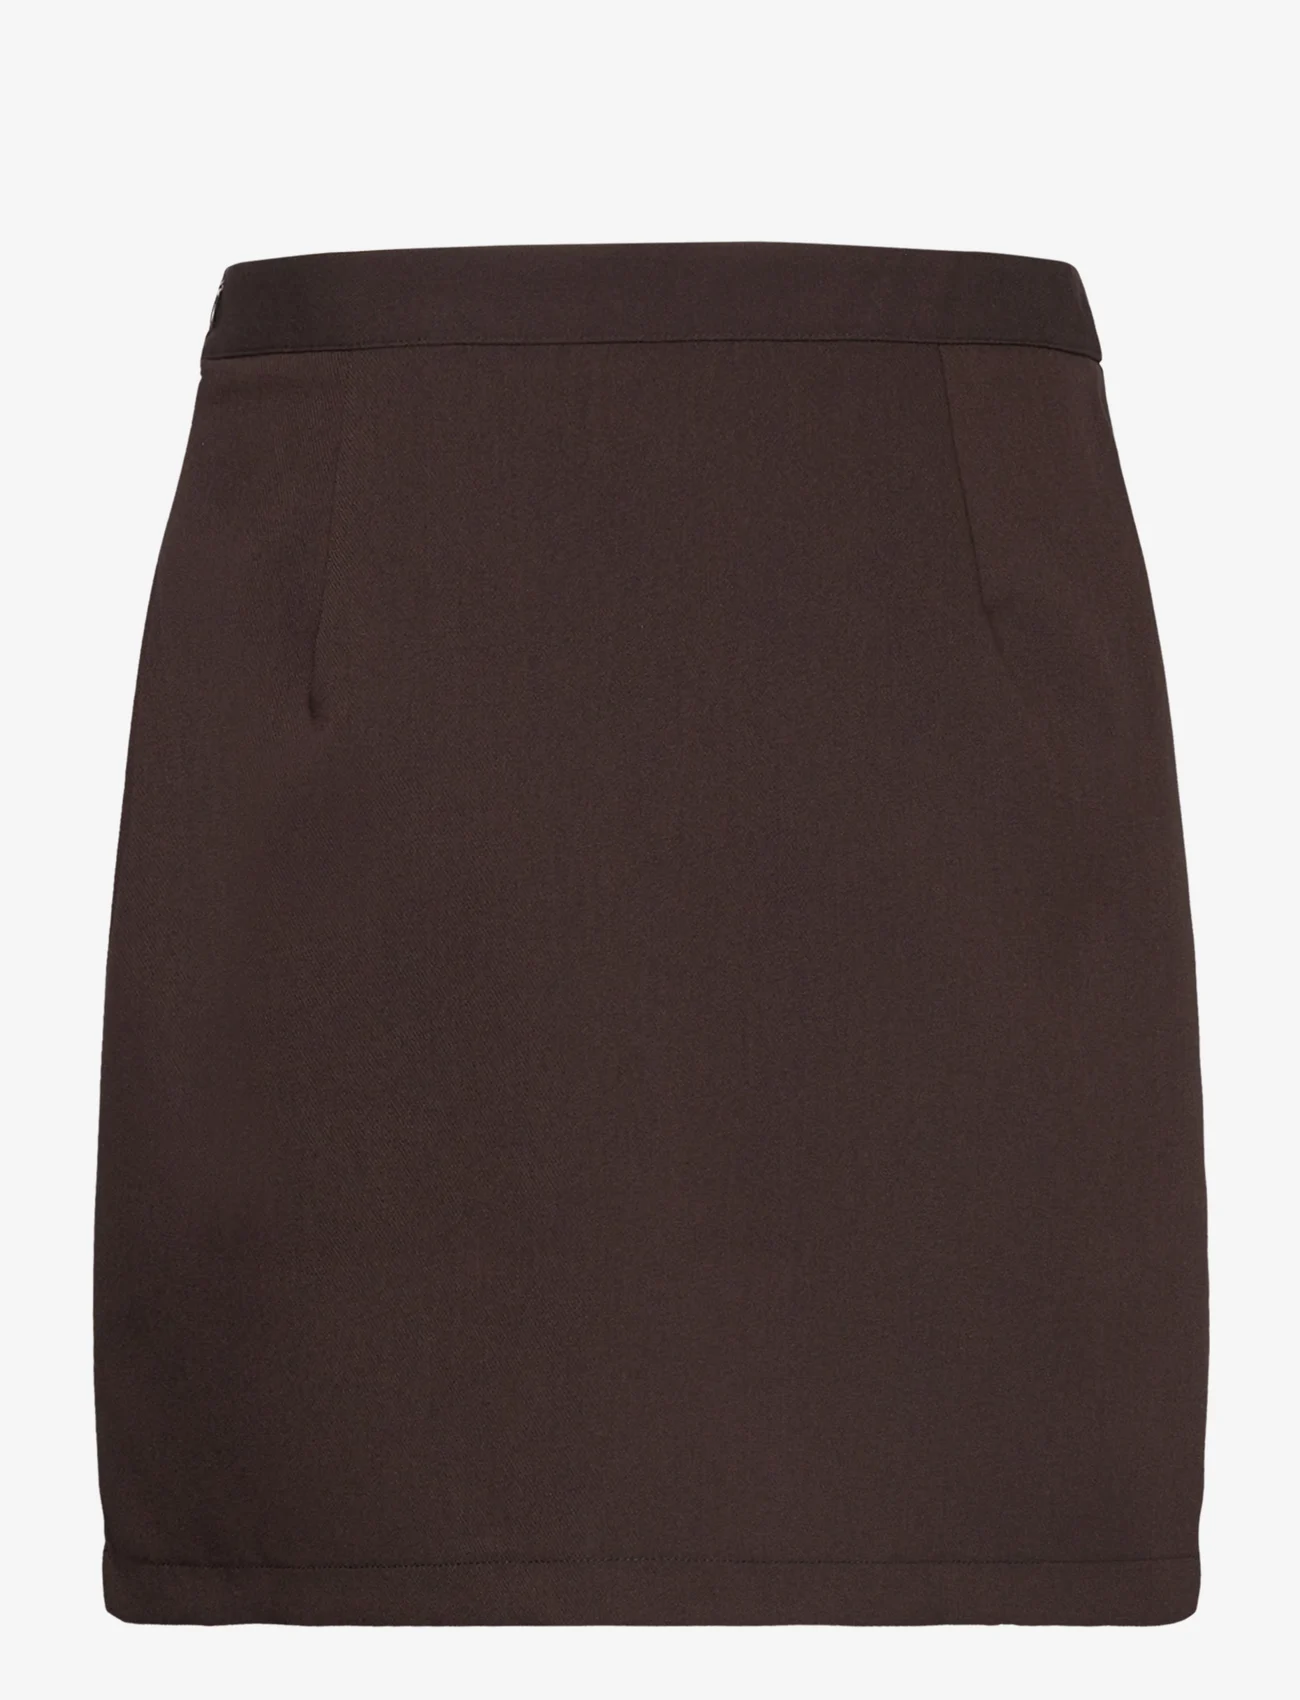 A-View - Annali skirt-1 - korta kjolar - brown - 1